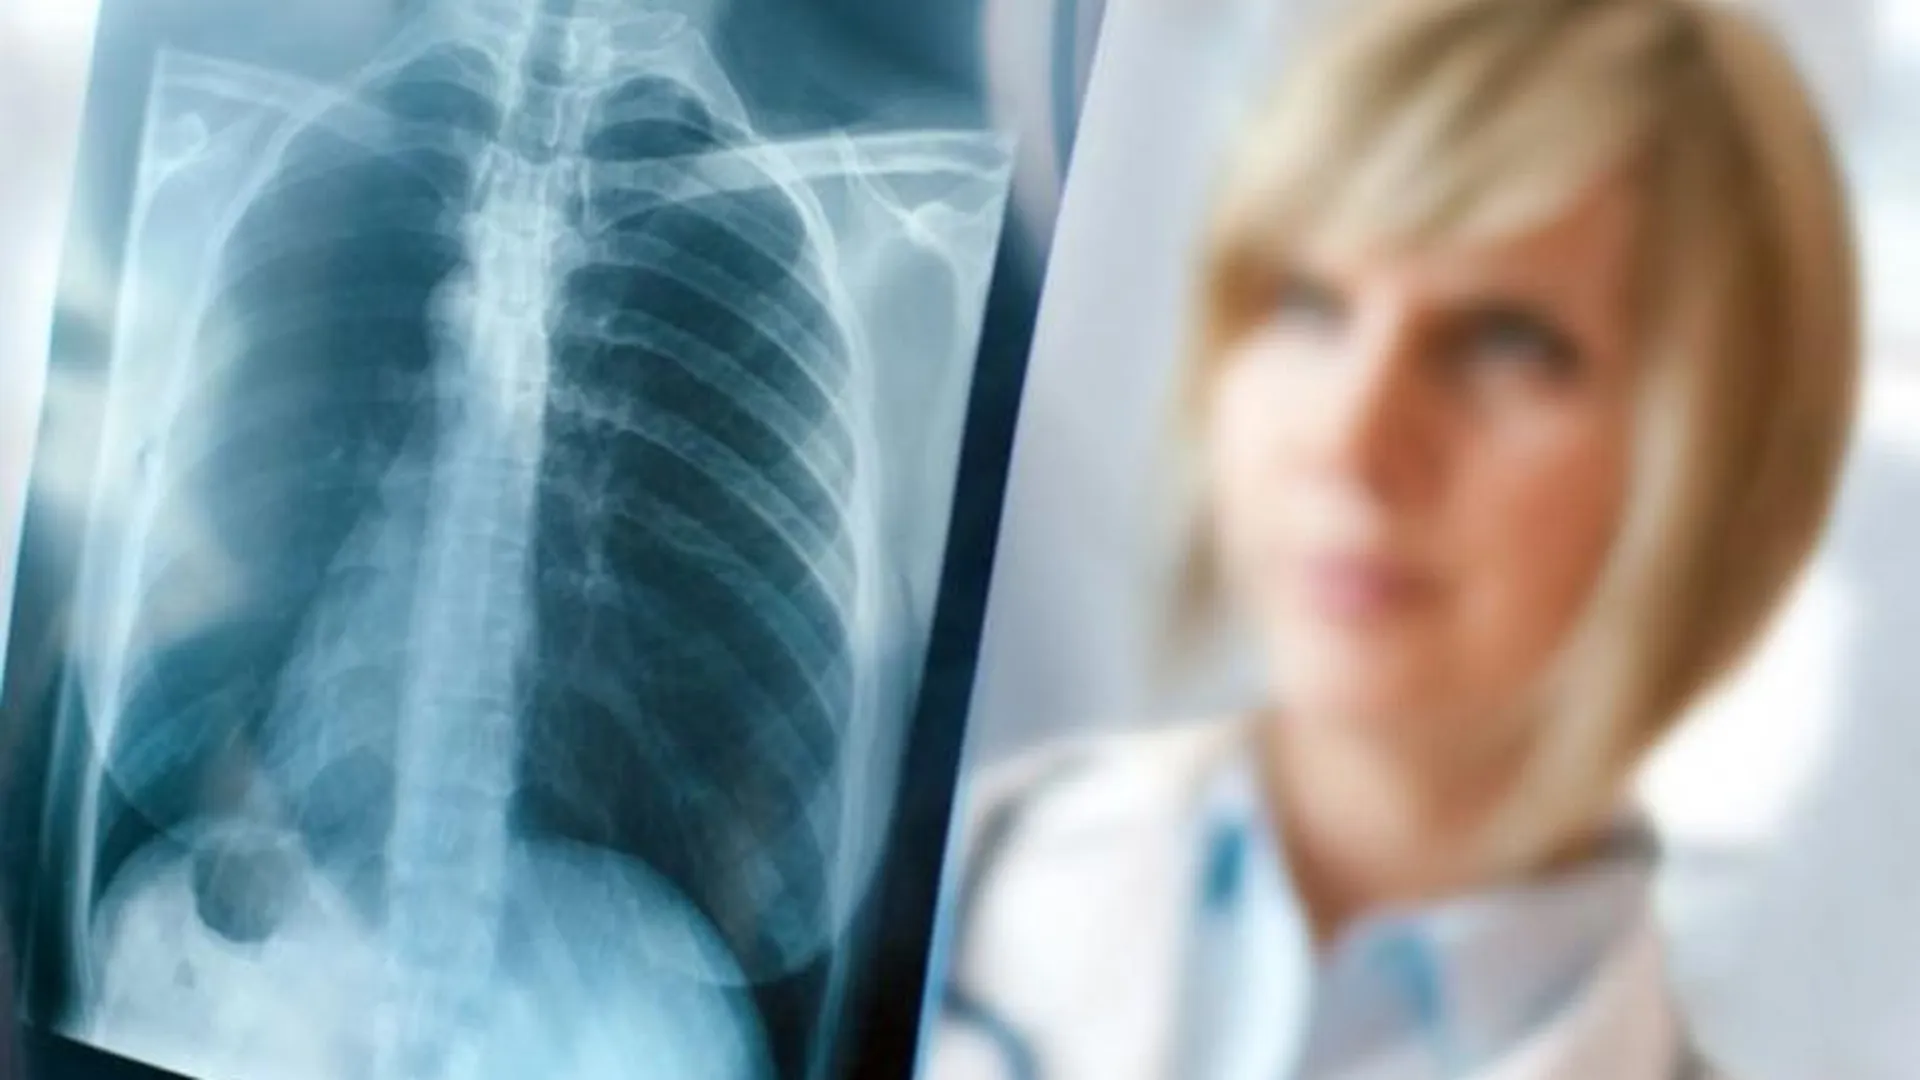 Активисты ОНФ просят поставить новый рентген-аппарат в Коломну